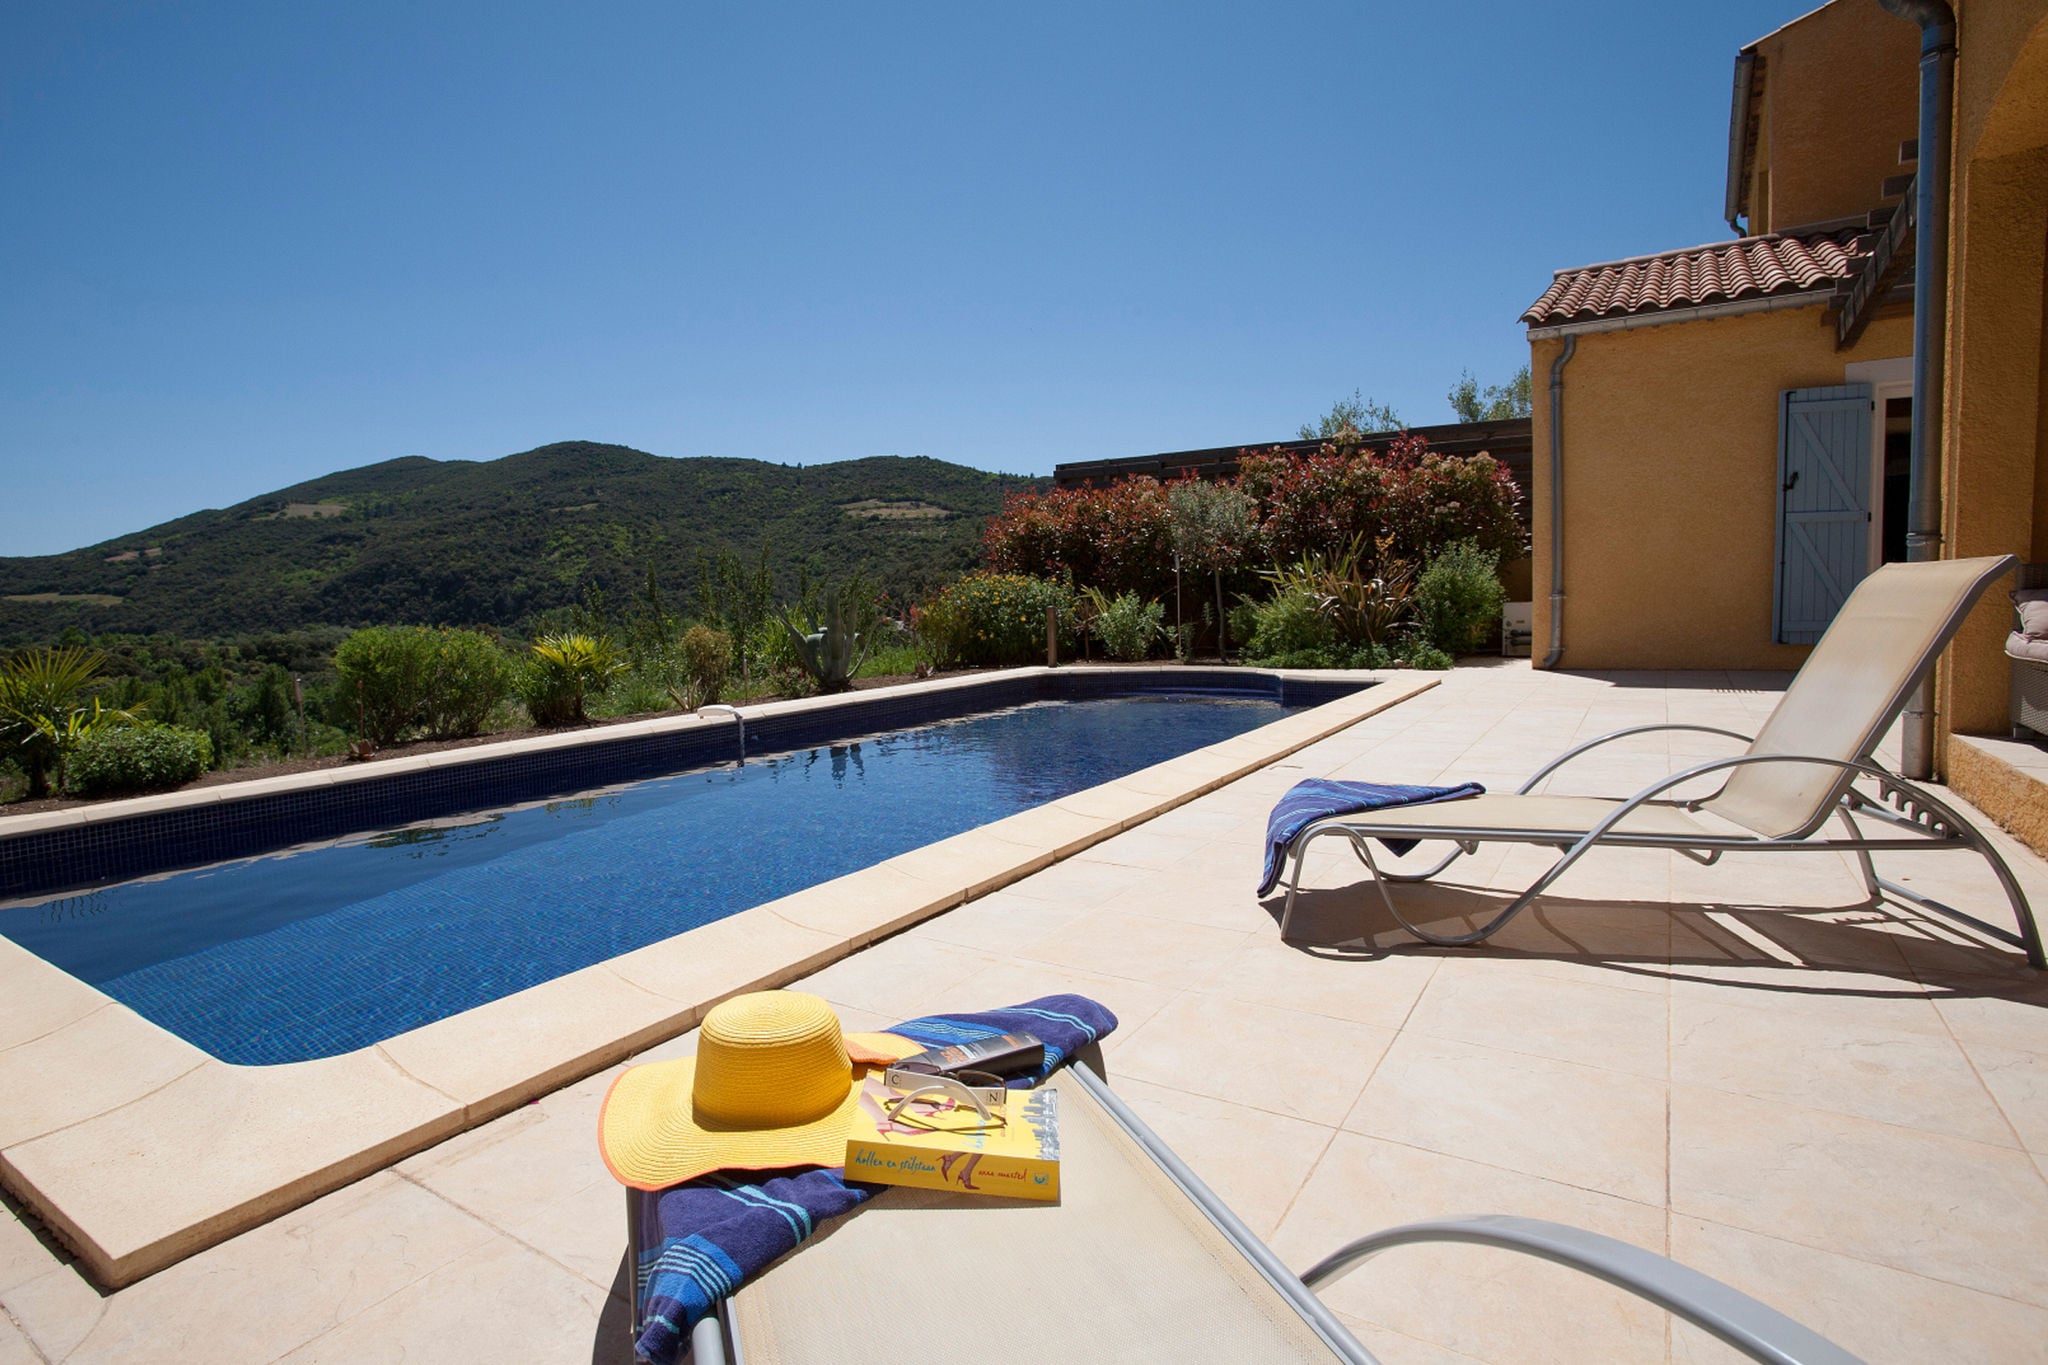 Vakantievilla met veel sfeer, veel privacy en een verwarmbaar privé zwembad